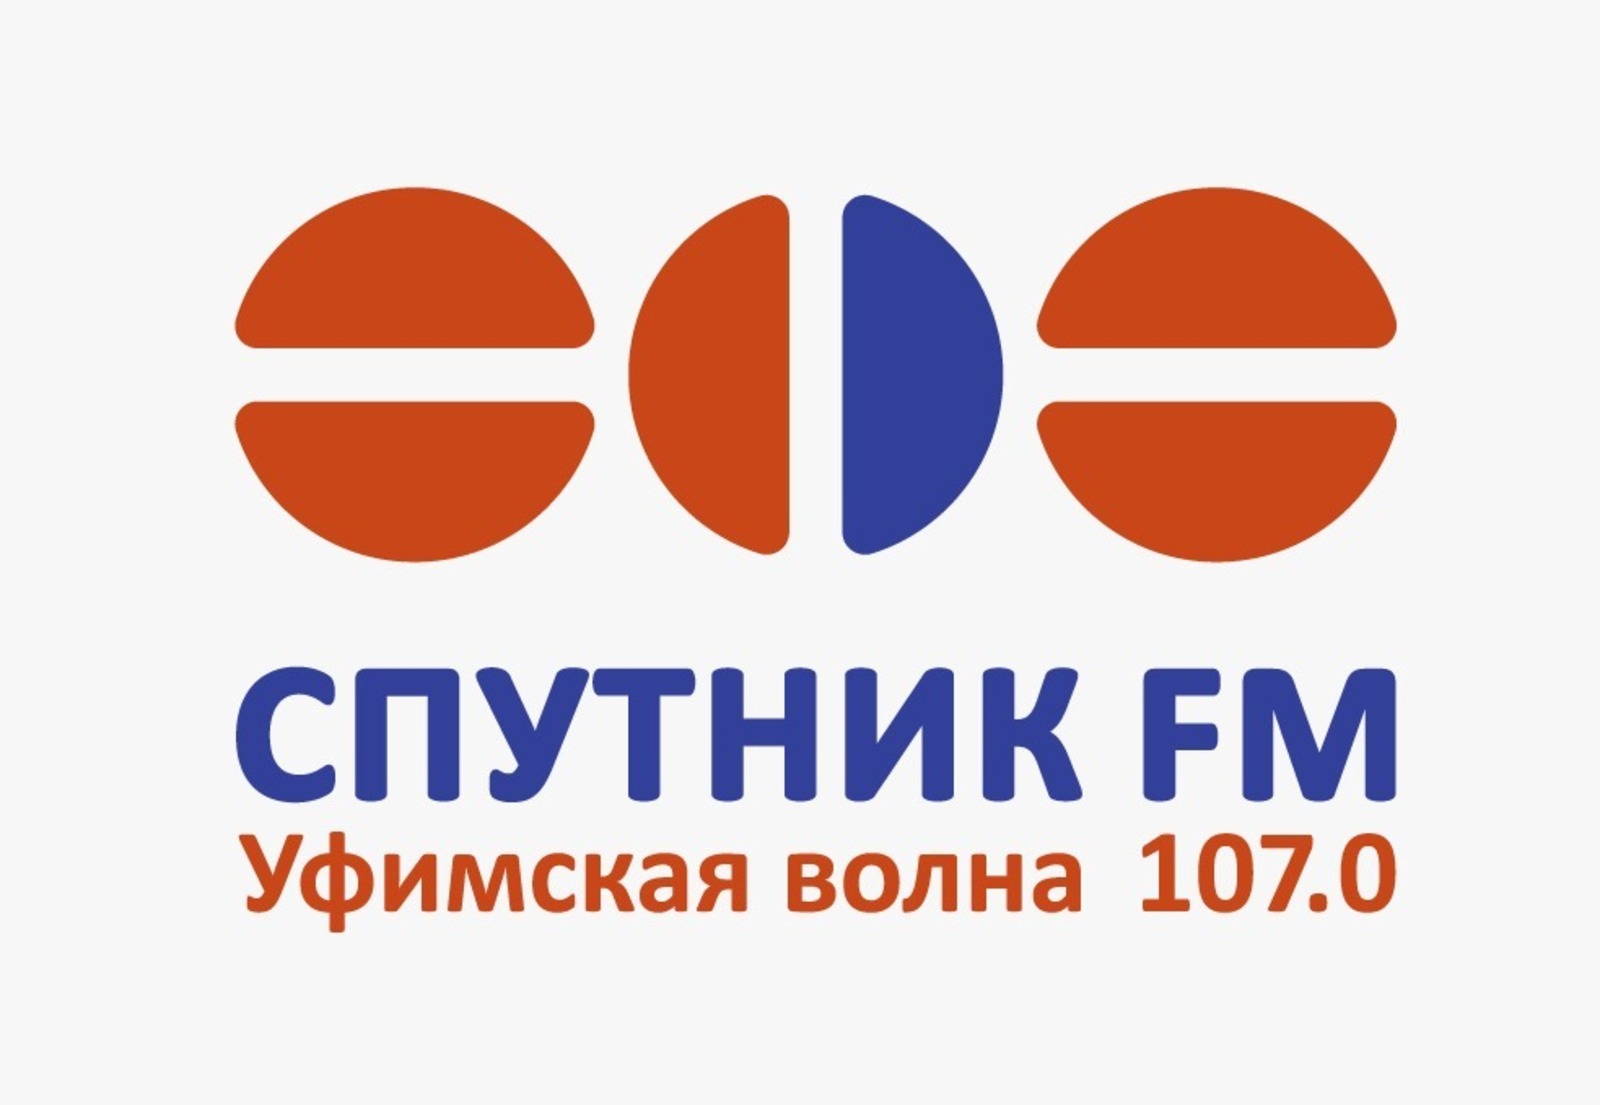 Радио «Спутник FM» отмечает 20-летний юбилей